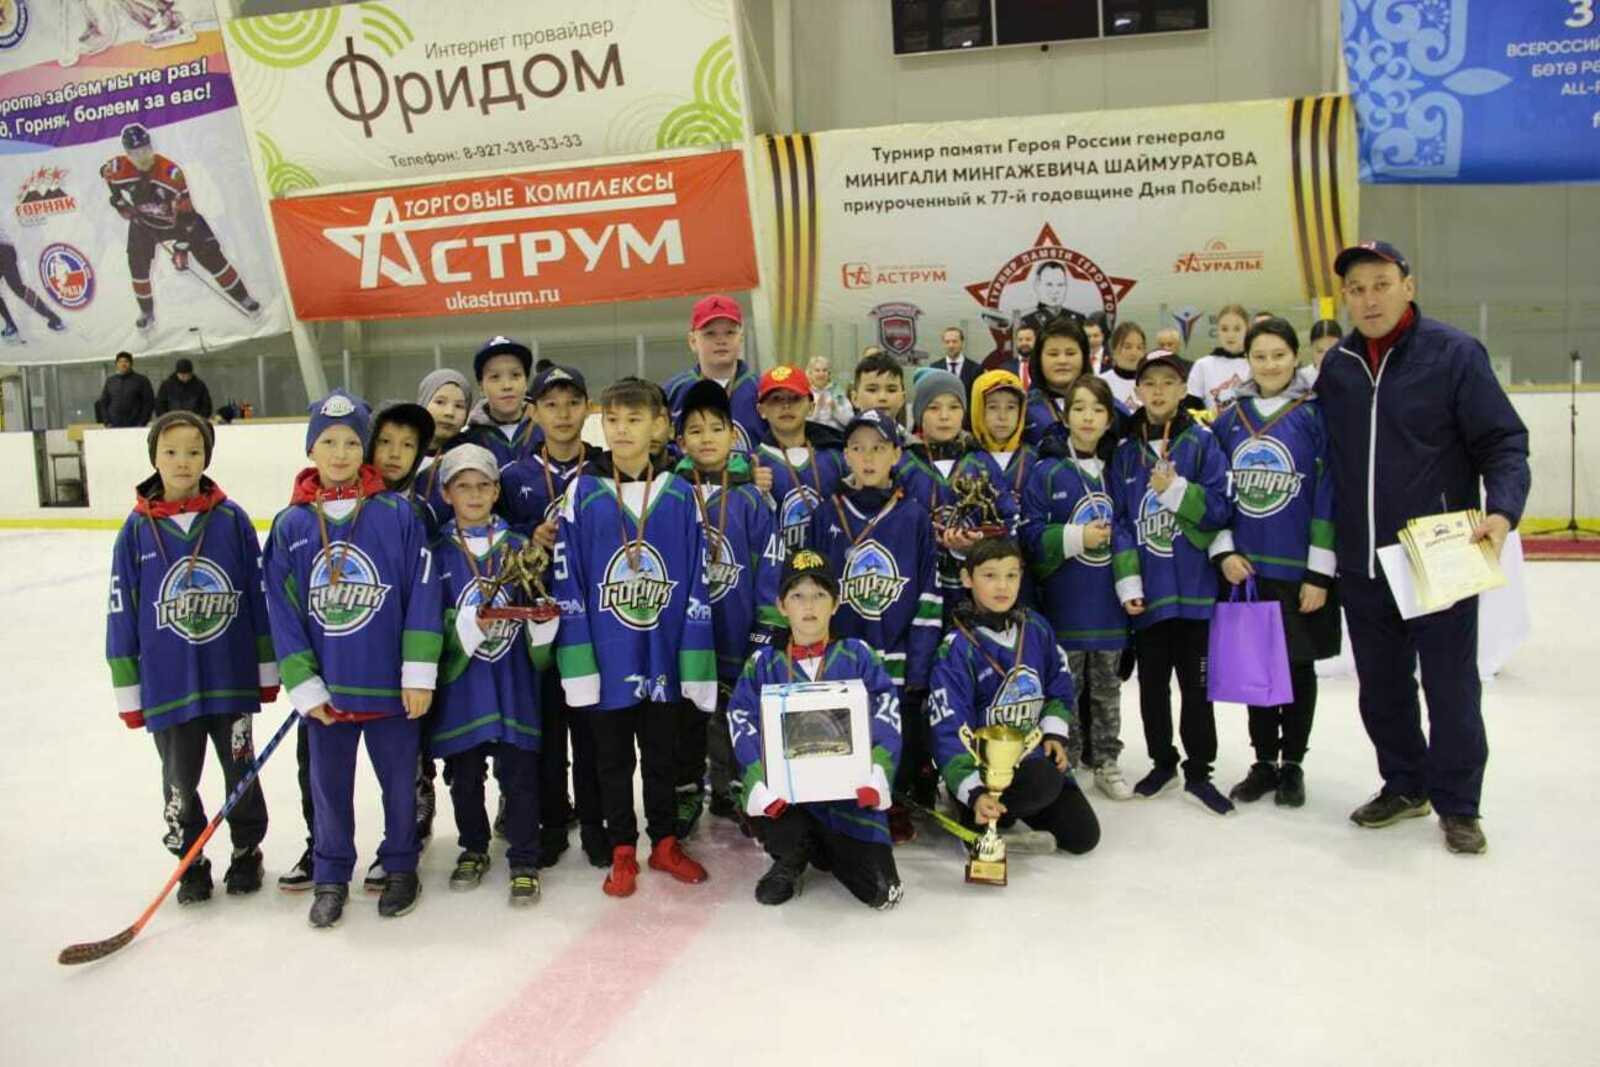 В Сибае прошел детский хоккейный турнир памяти генерала Шаймуратова